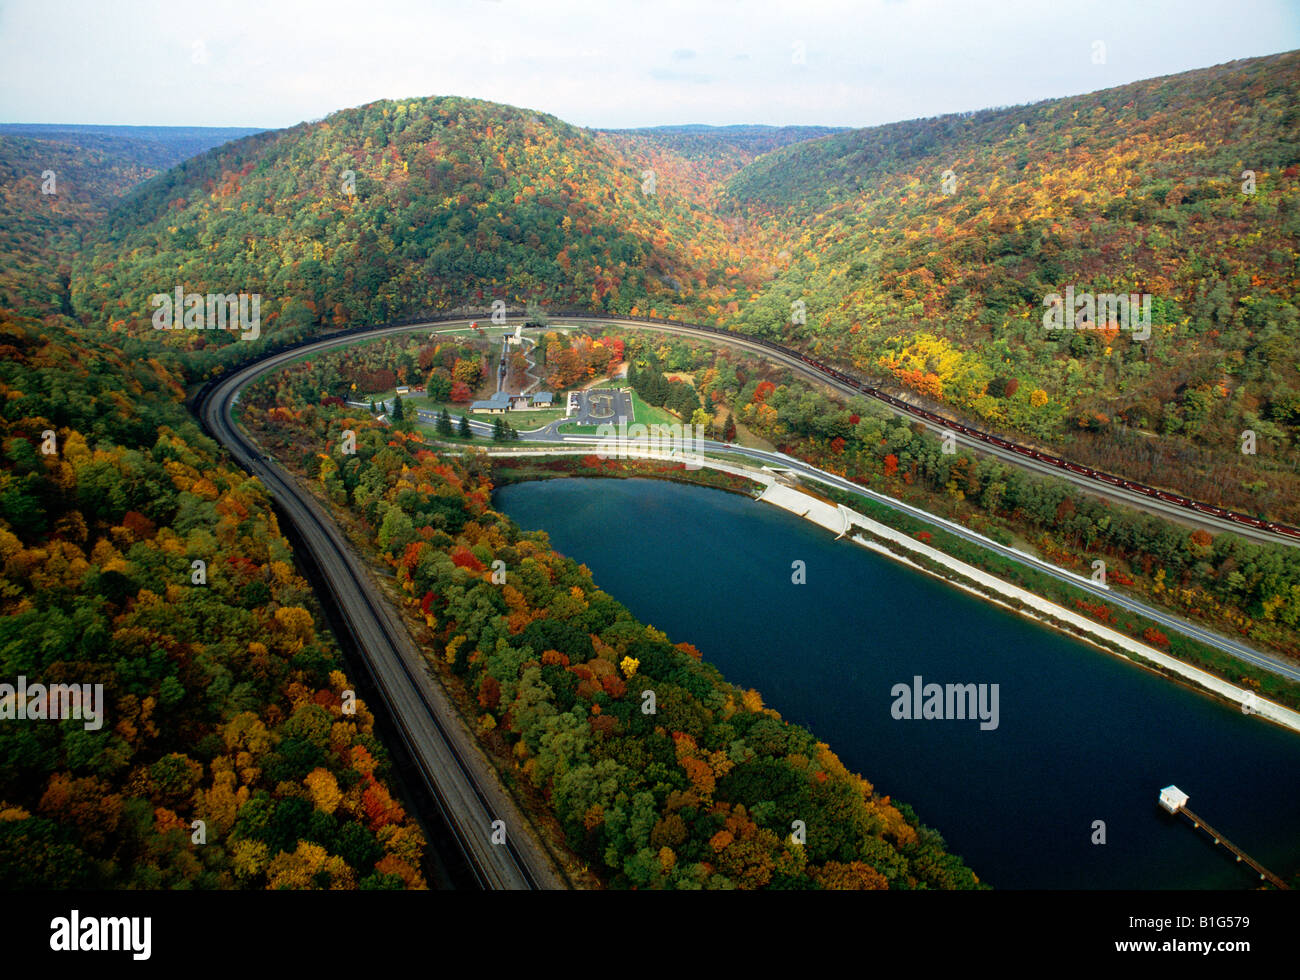 Vista aérea de la curva en forma de herradura con colorido follaje de otoño Foto de stock